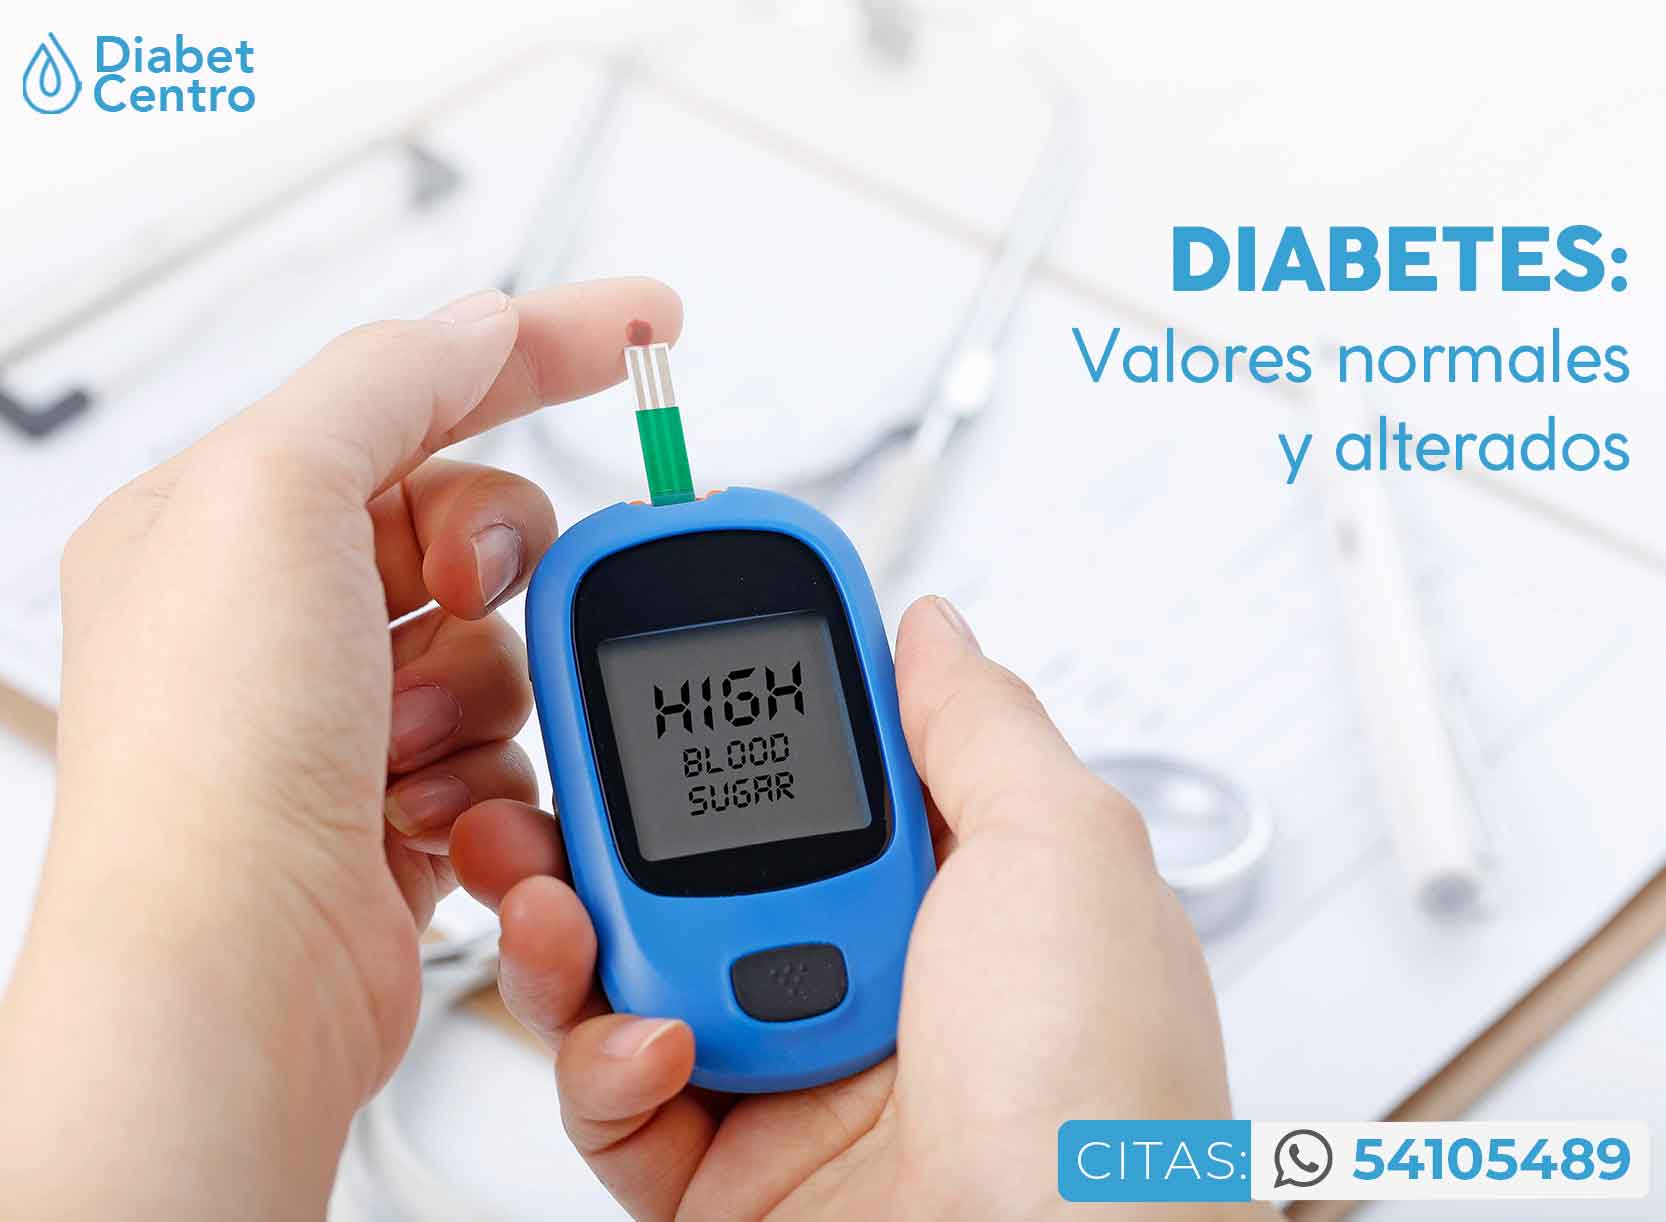 Diabetes: Valores normales y alterados